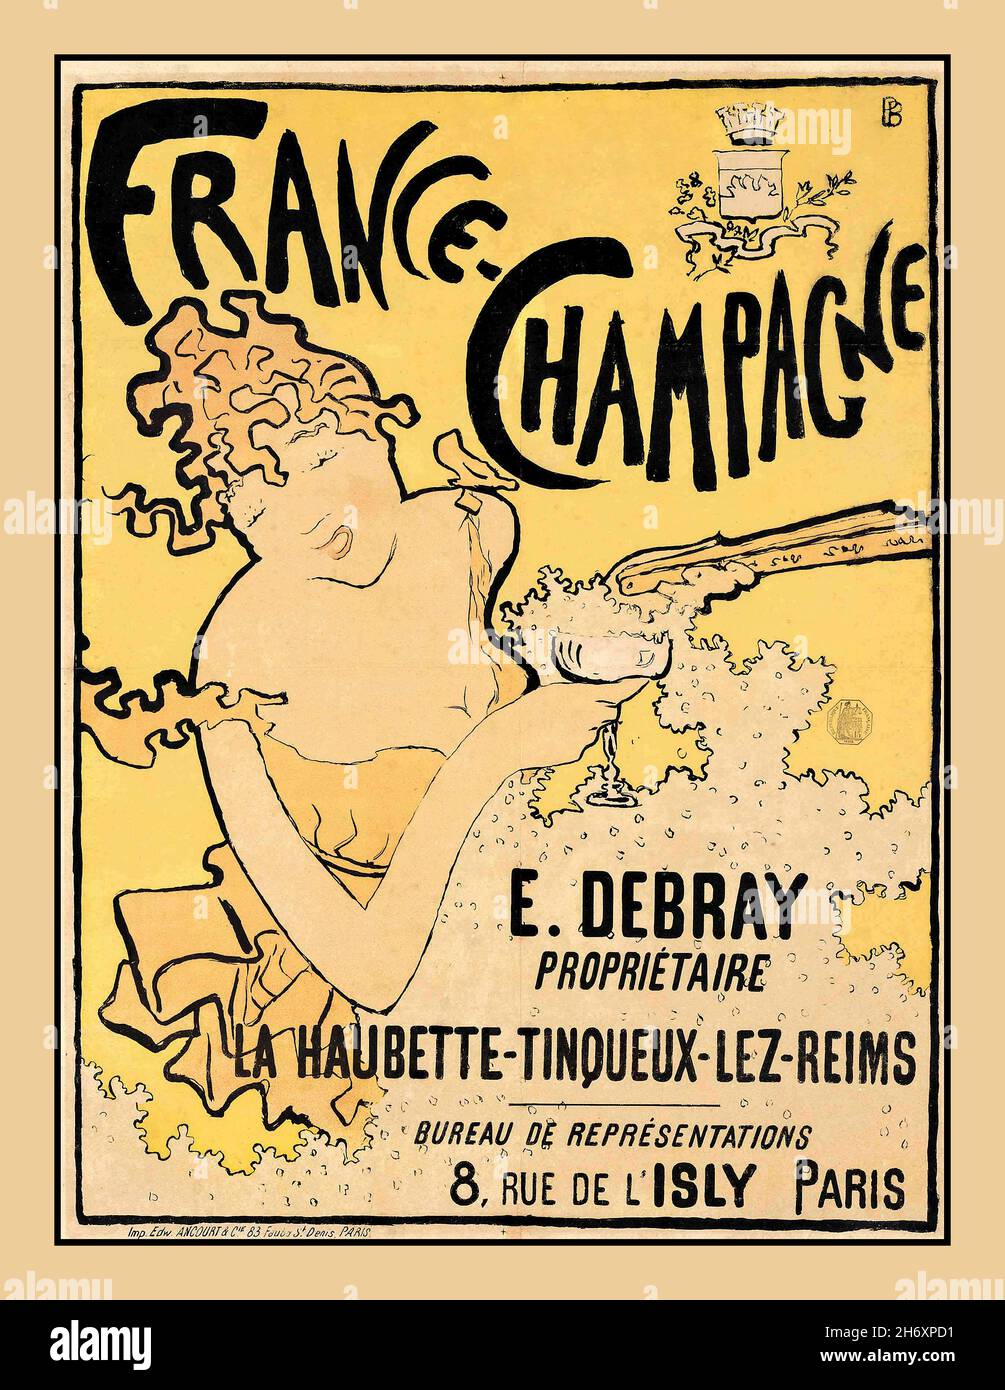 FRANCE CHAMPAGNE BONNARD Vintage Art Deco ‘France Champagne’ La Haubette-Tinqueux- Le Reims Poster in a flamboyant Art Deco Parisian style Artist Pierre Bonnard  (1867–1947) Poster art artwork advertisement for Debray Champagne, 1891 Stock Photo